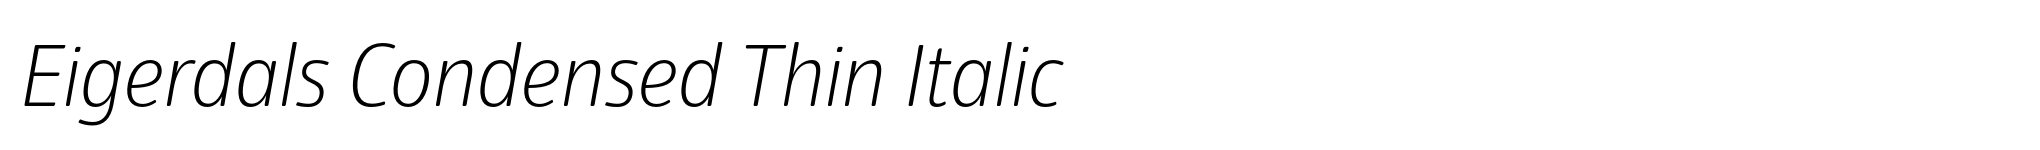 Eigerdals Condensed Thin Italic image